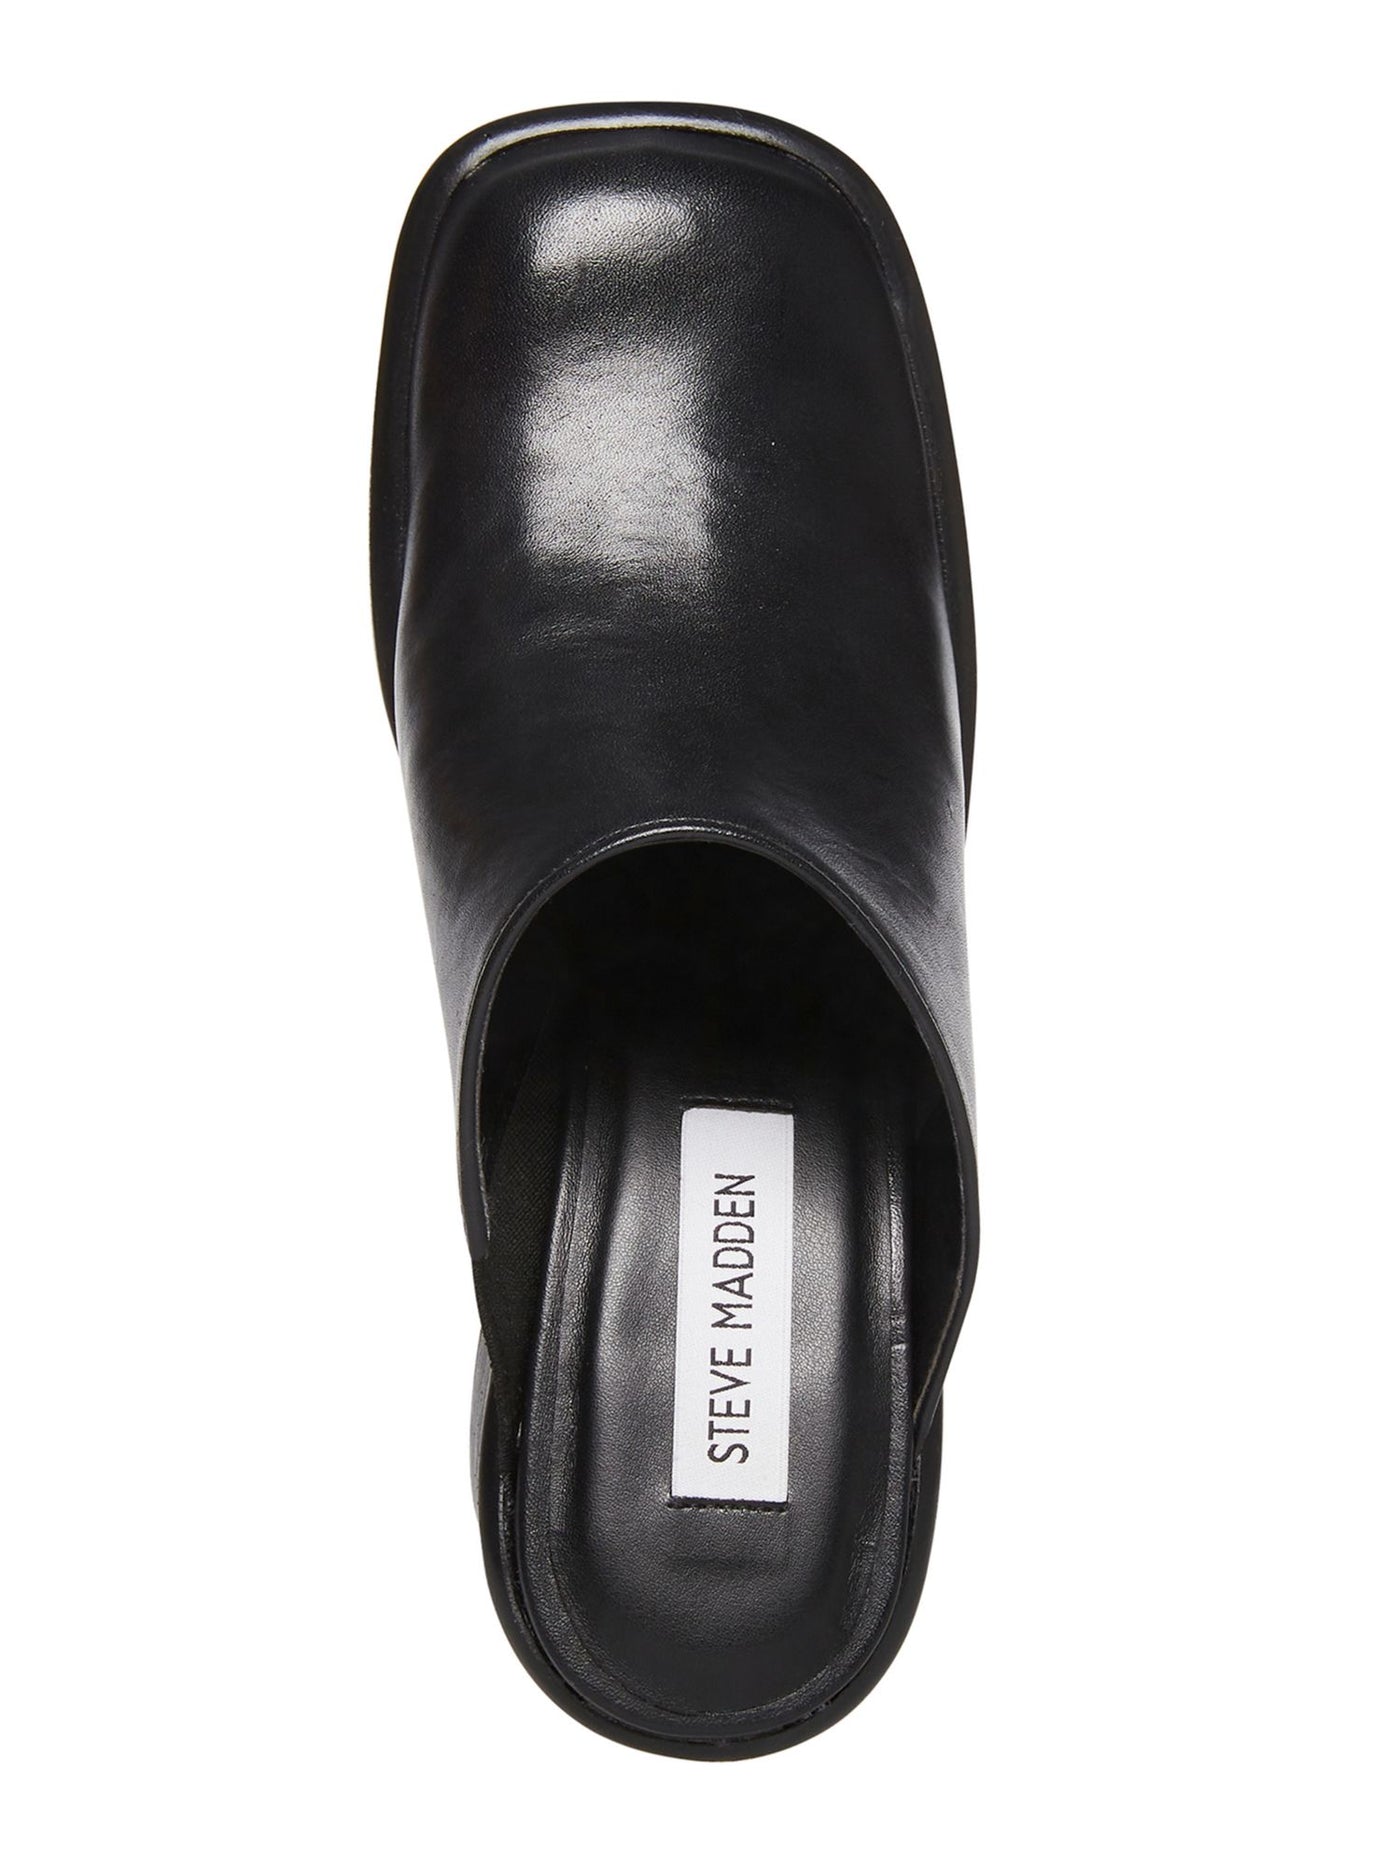 STEVE MADDEN Womens Black 1" Platform Padded Goring Flirtie Square Toe Block Heel Slip On Leather Clogs 6 M